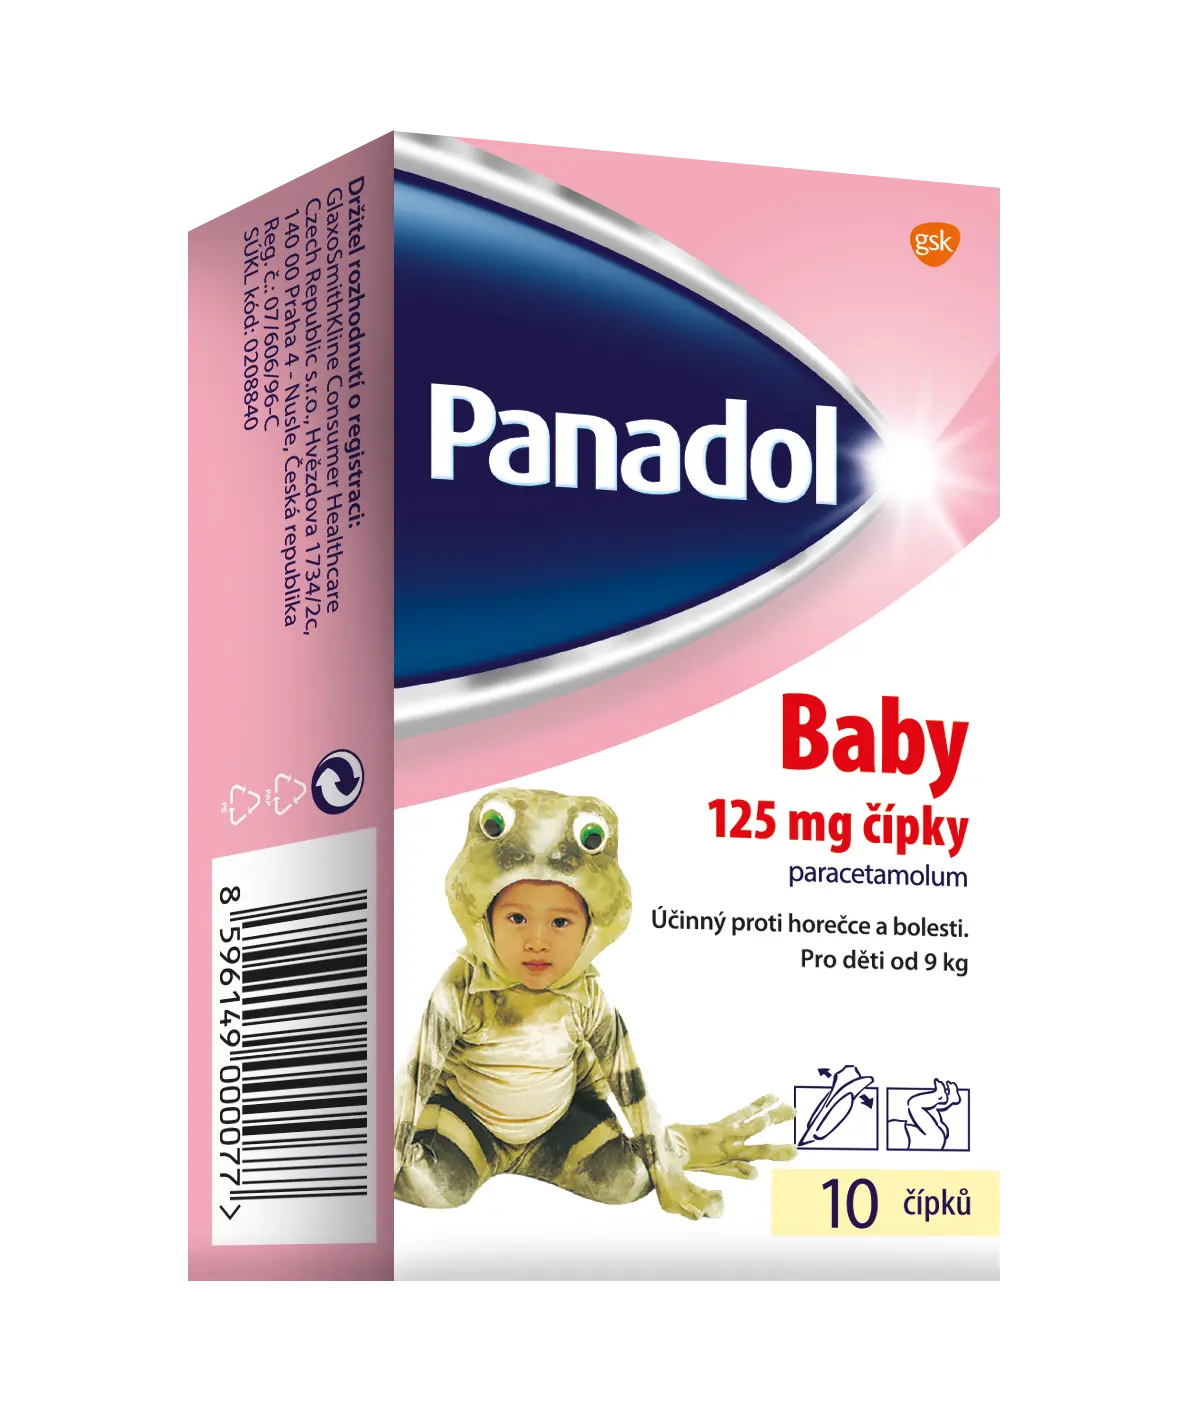 Panadol Baby Čípky rct.sup. 10 x 125 mg